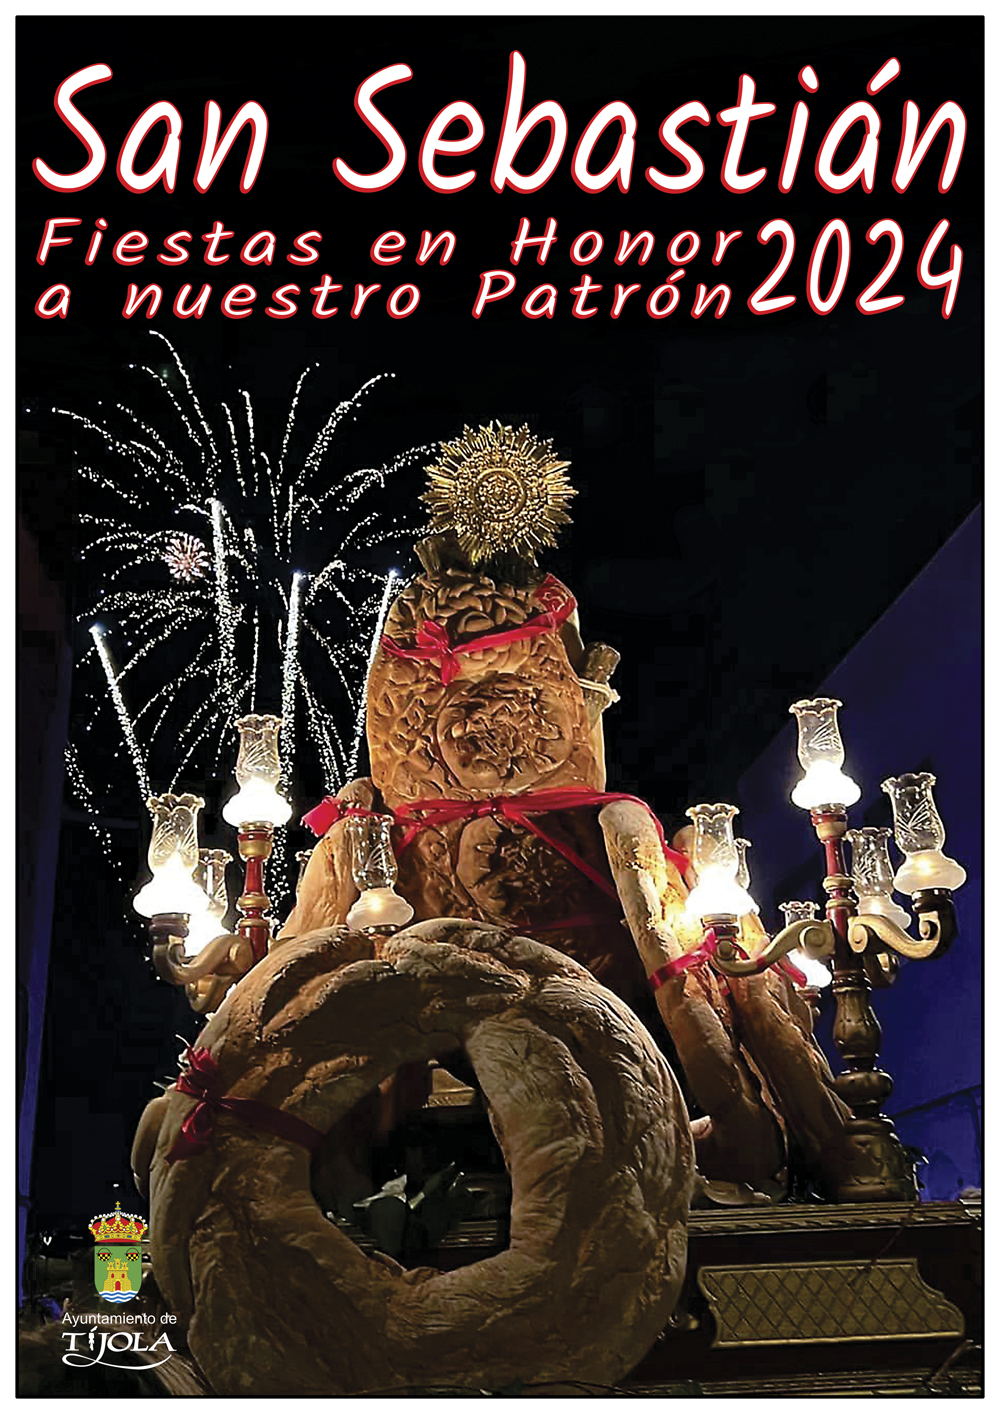 Imagen del Cartel de las Fiestas en honor a San Sebastián. Imagen de San Sebastián de espaldas con palmera de fuegos artificiales al fondo.